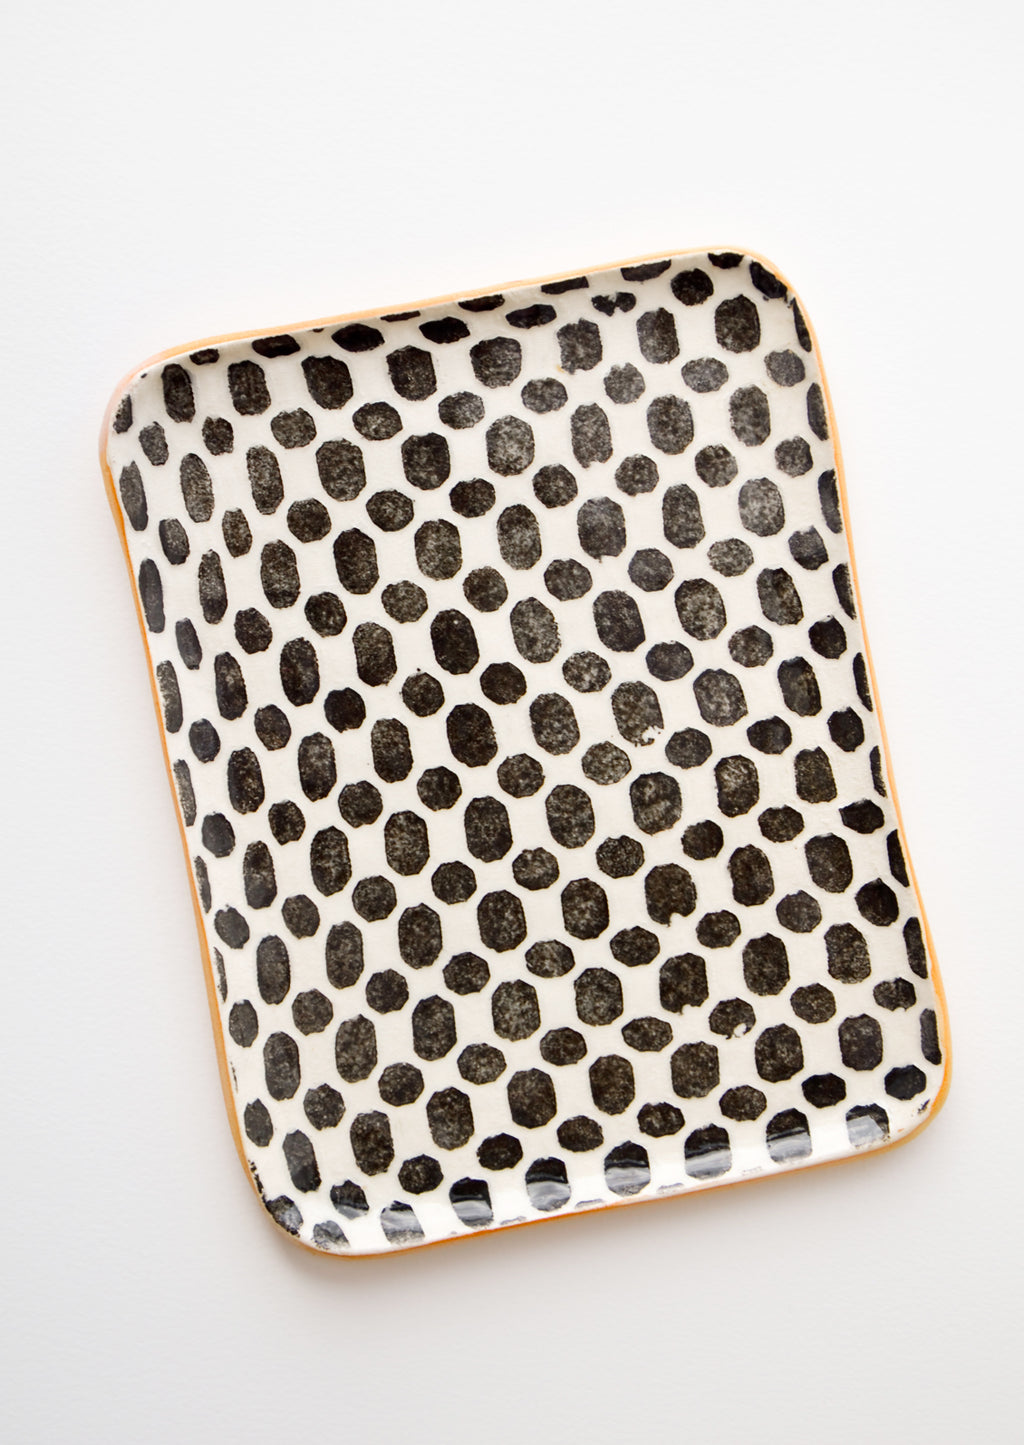 Dot / Black: Pressed Pattern Ceramic Tea Tray in Dot Black - LEIF